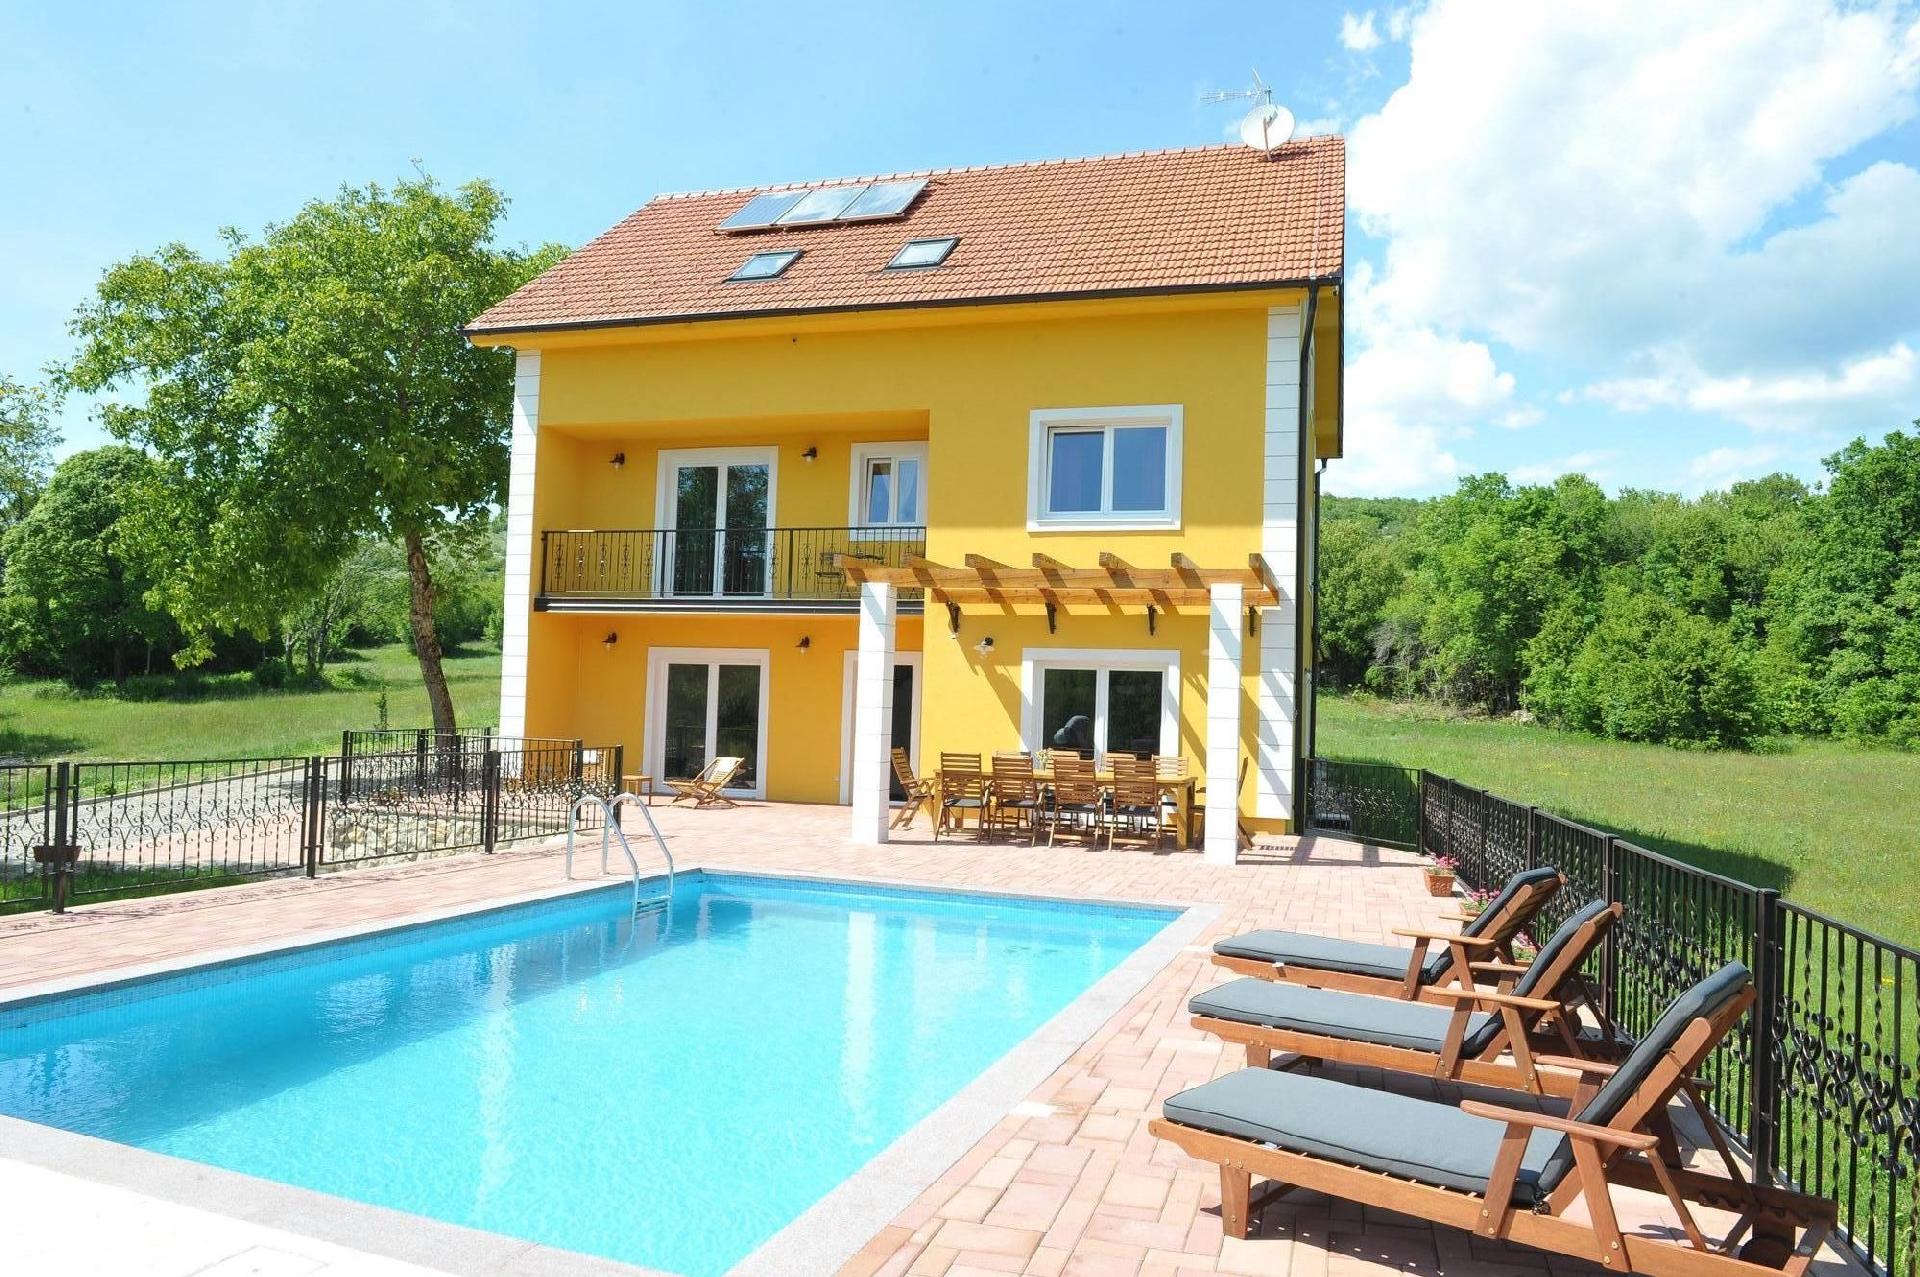 Alleinstehendes Ferienhaus mit Swimmingpool fü Ferienhaus in Europa